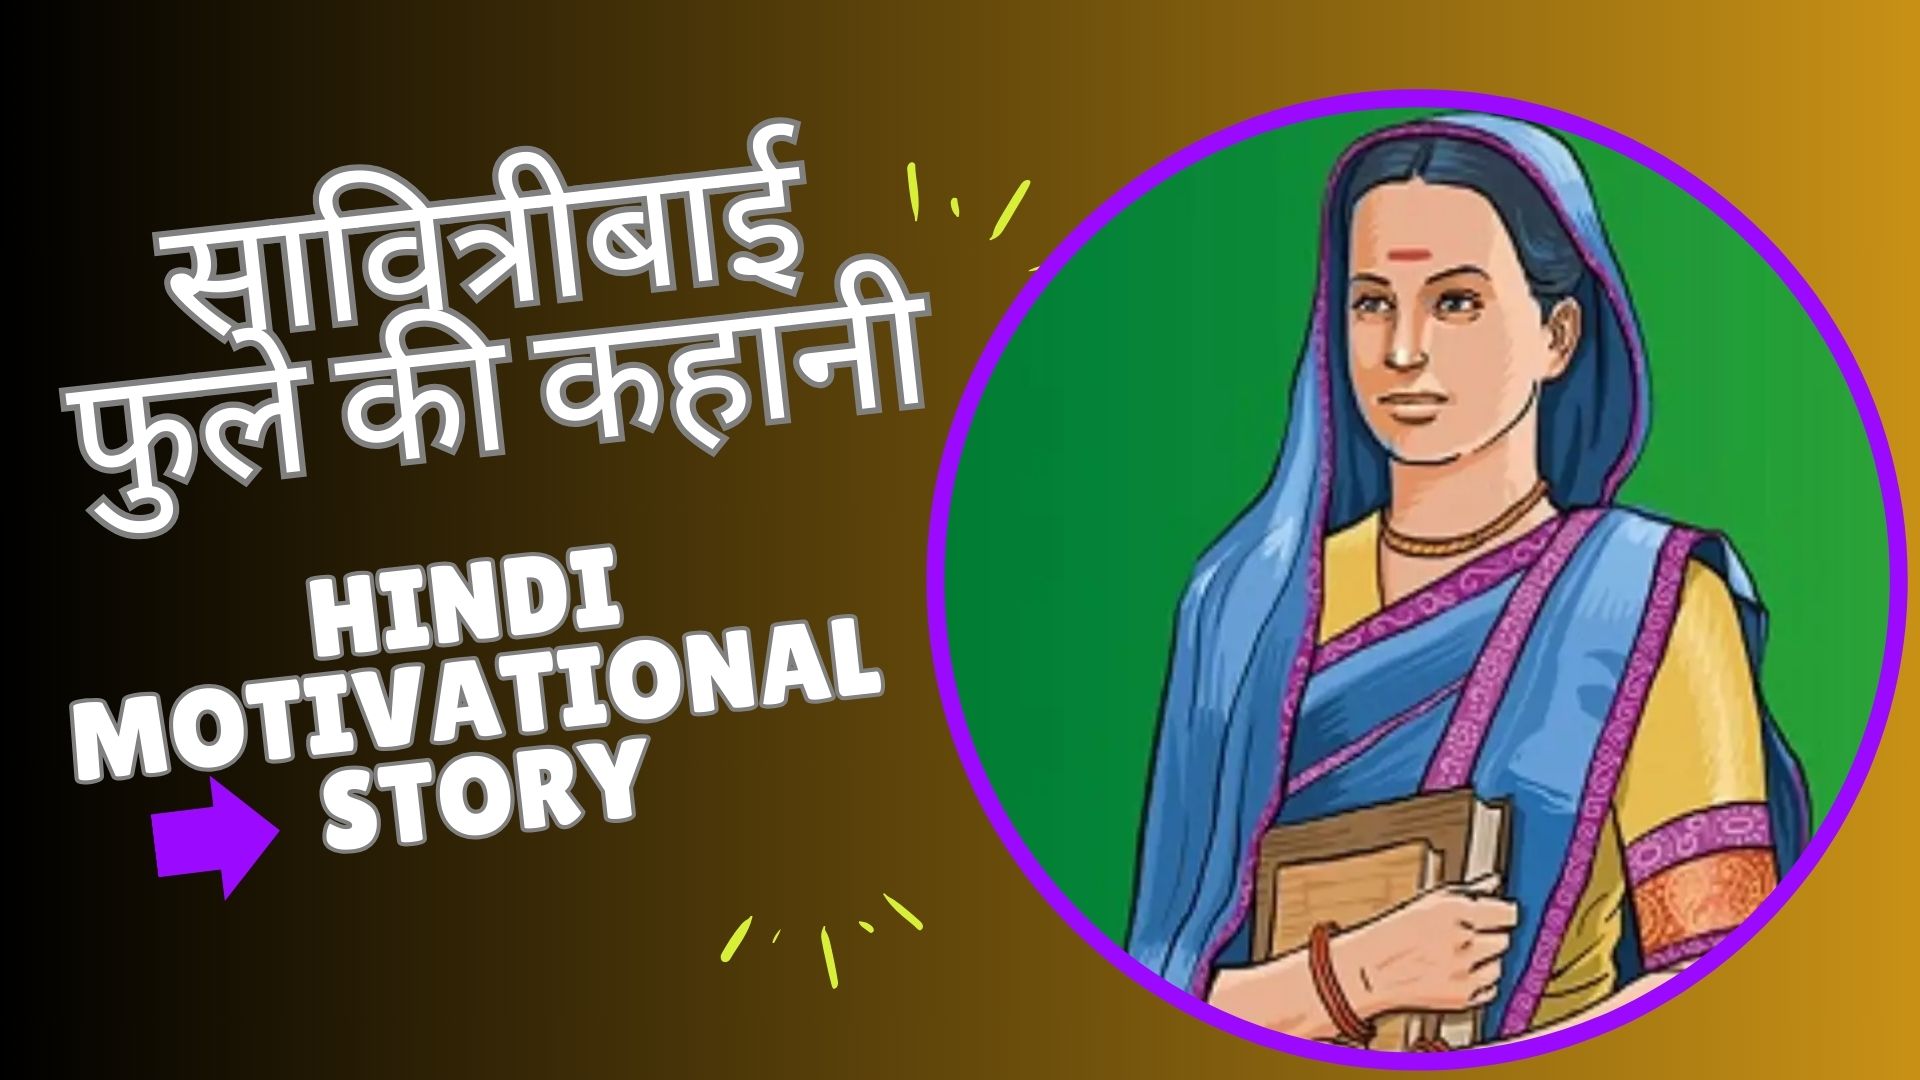 सावित्रीबाई फुले की कहानी | Hindi Motivational Story